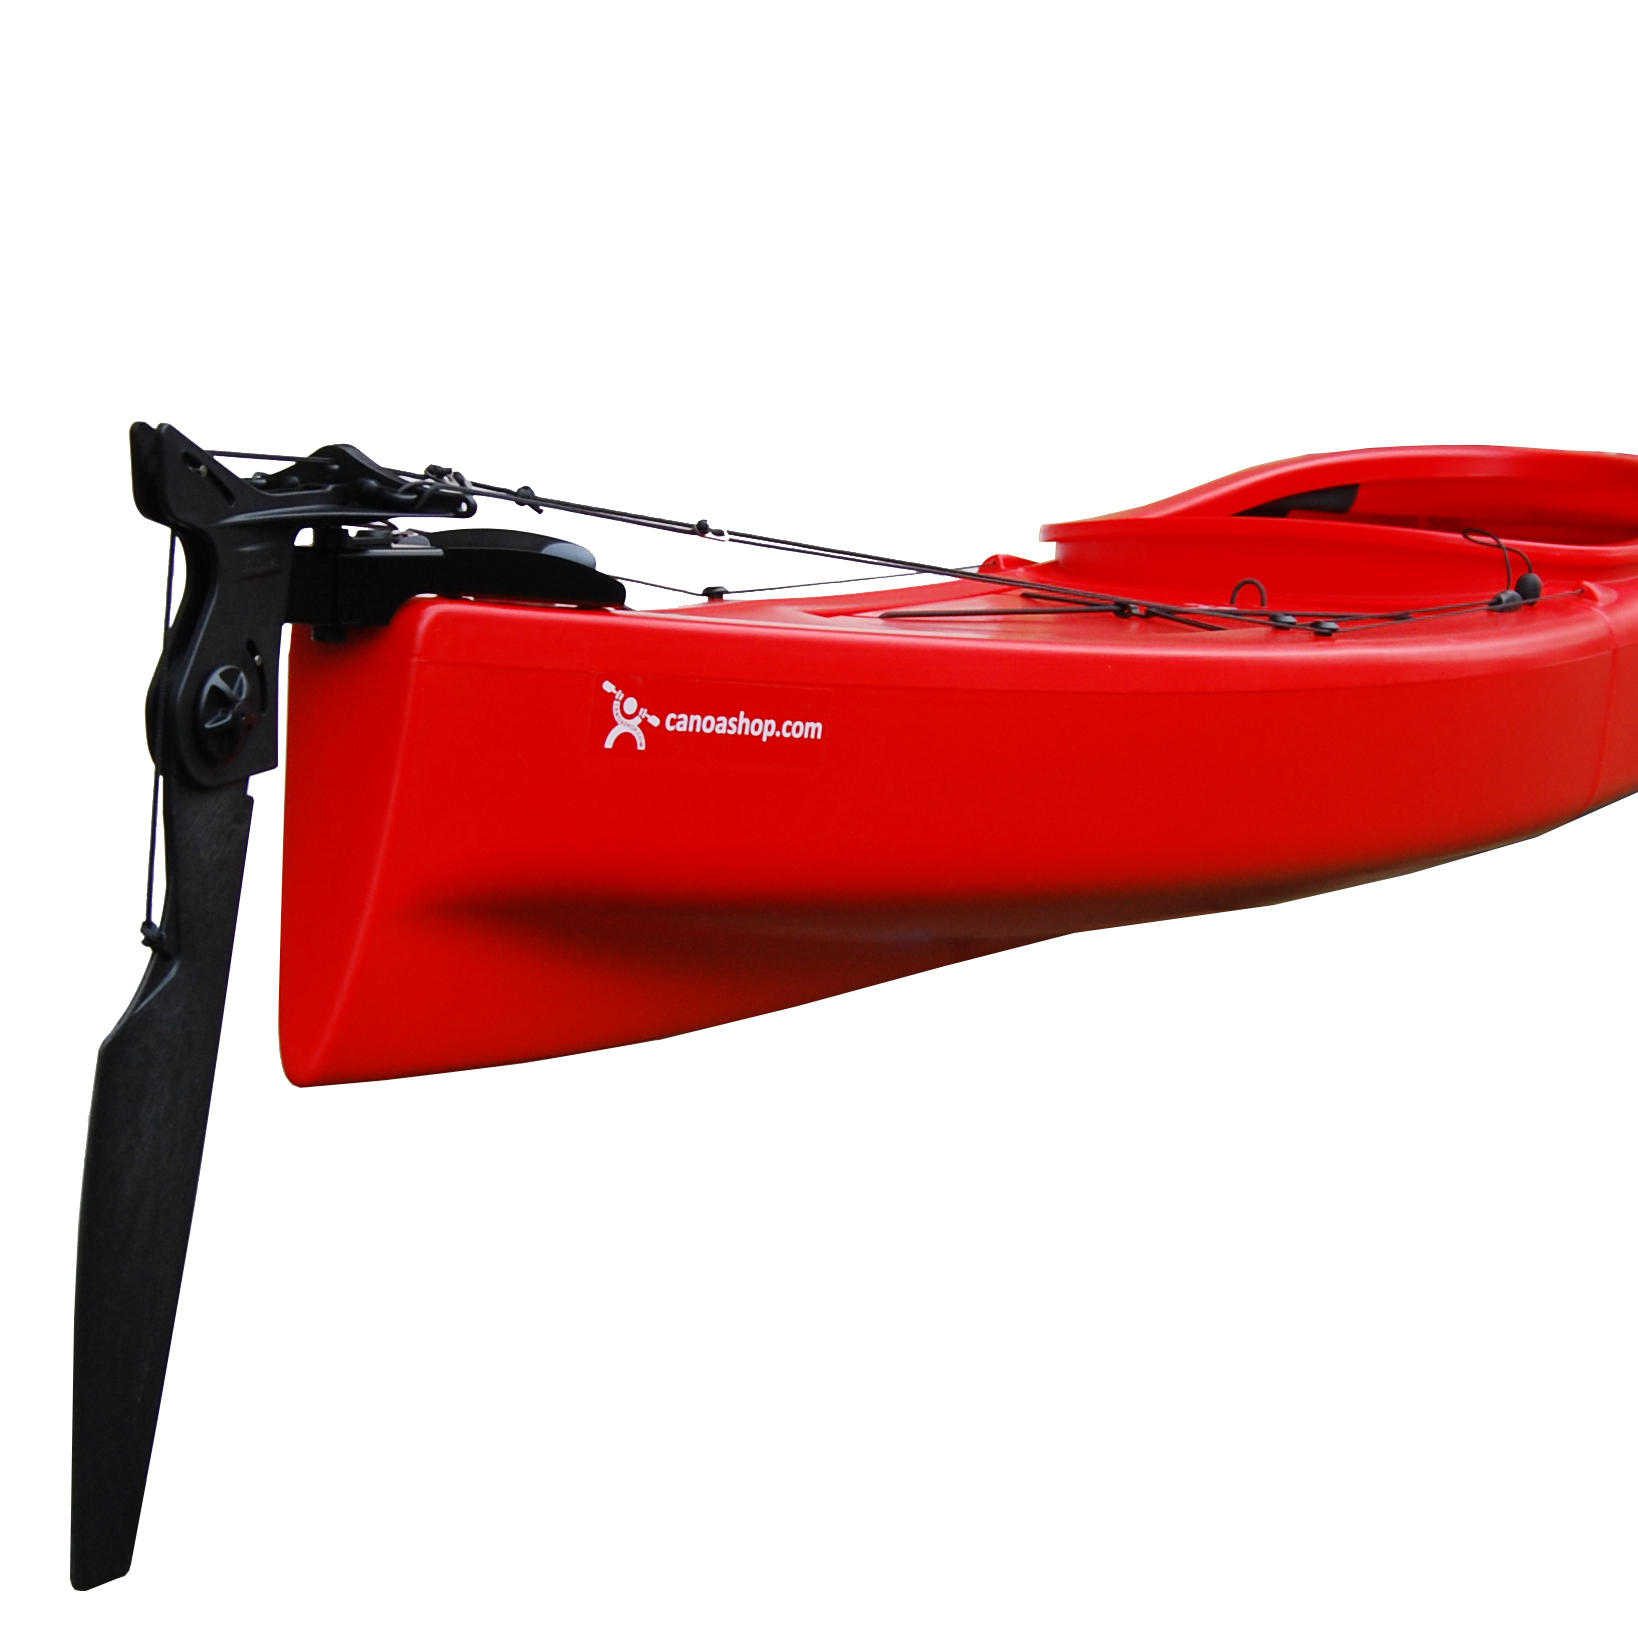 Nrpfell Accessori per Kit di Timone per Kayak di Ricambio Resistenti e Resistenti